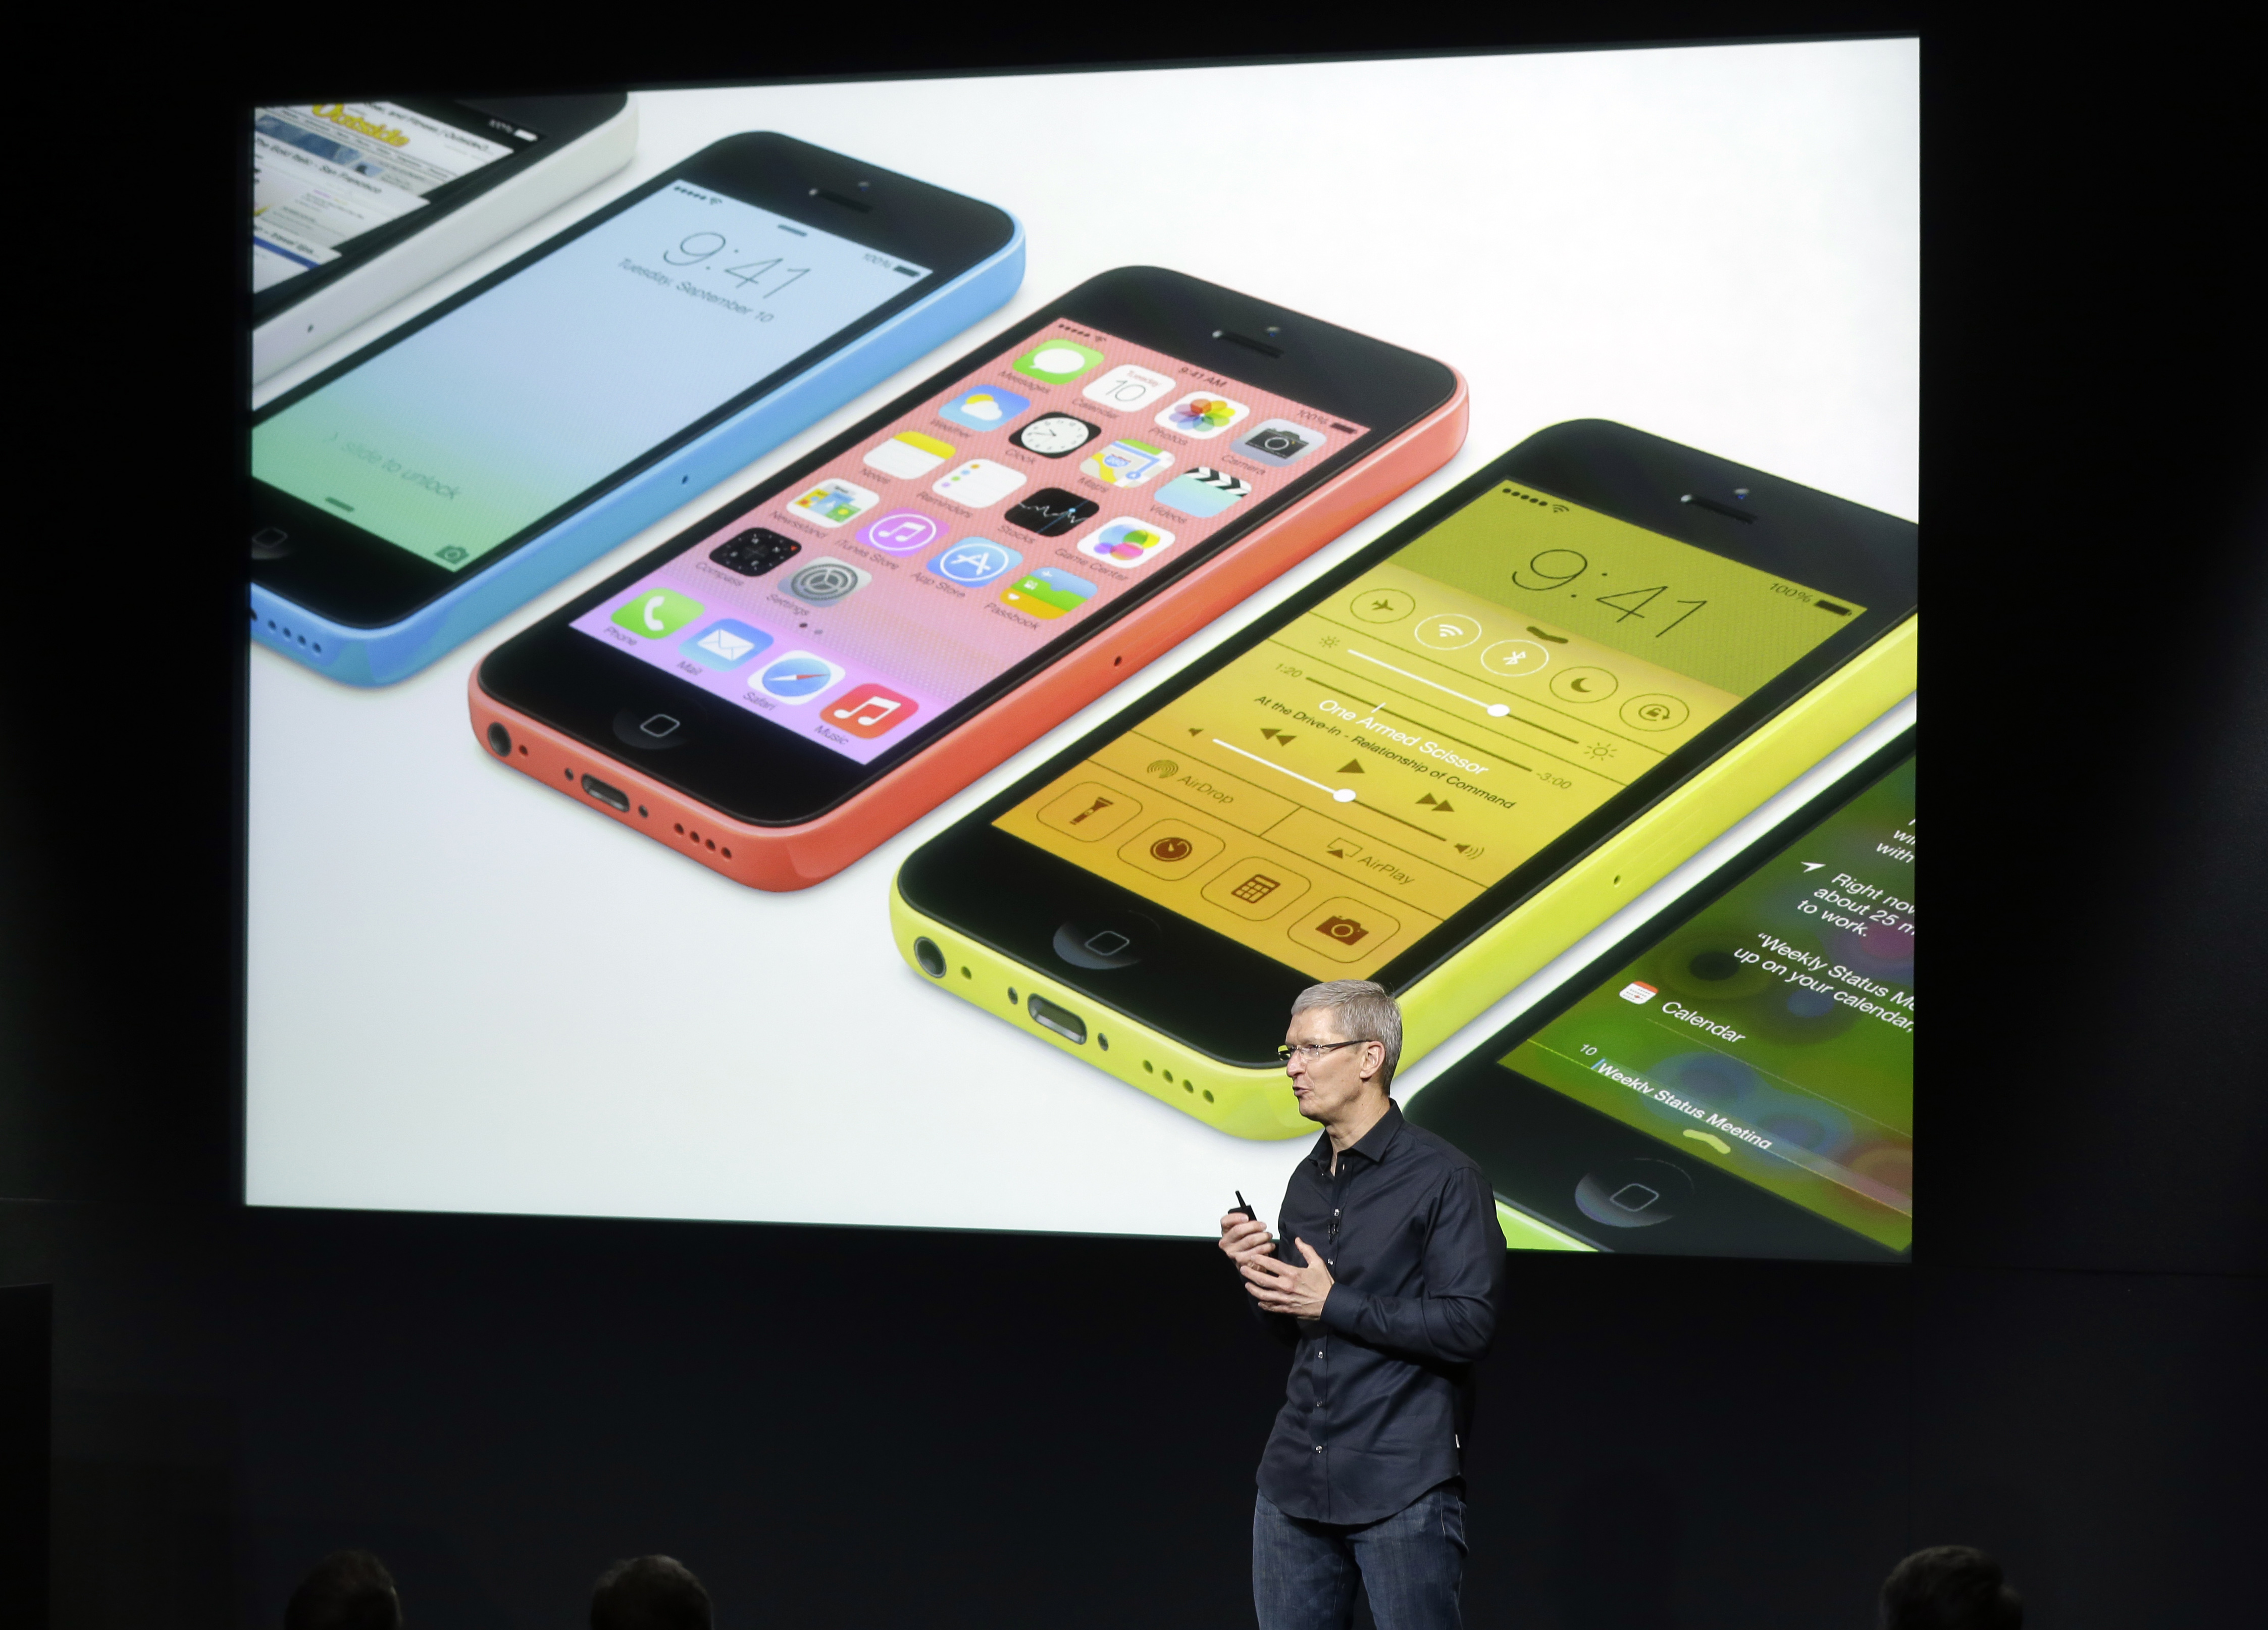 5C släpptes i olika färger – men ska ändå vara bättre än en iPhone 5 enligt flera recensenter.